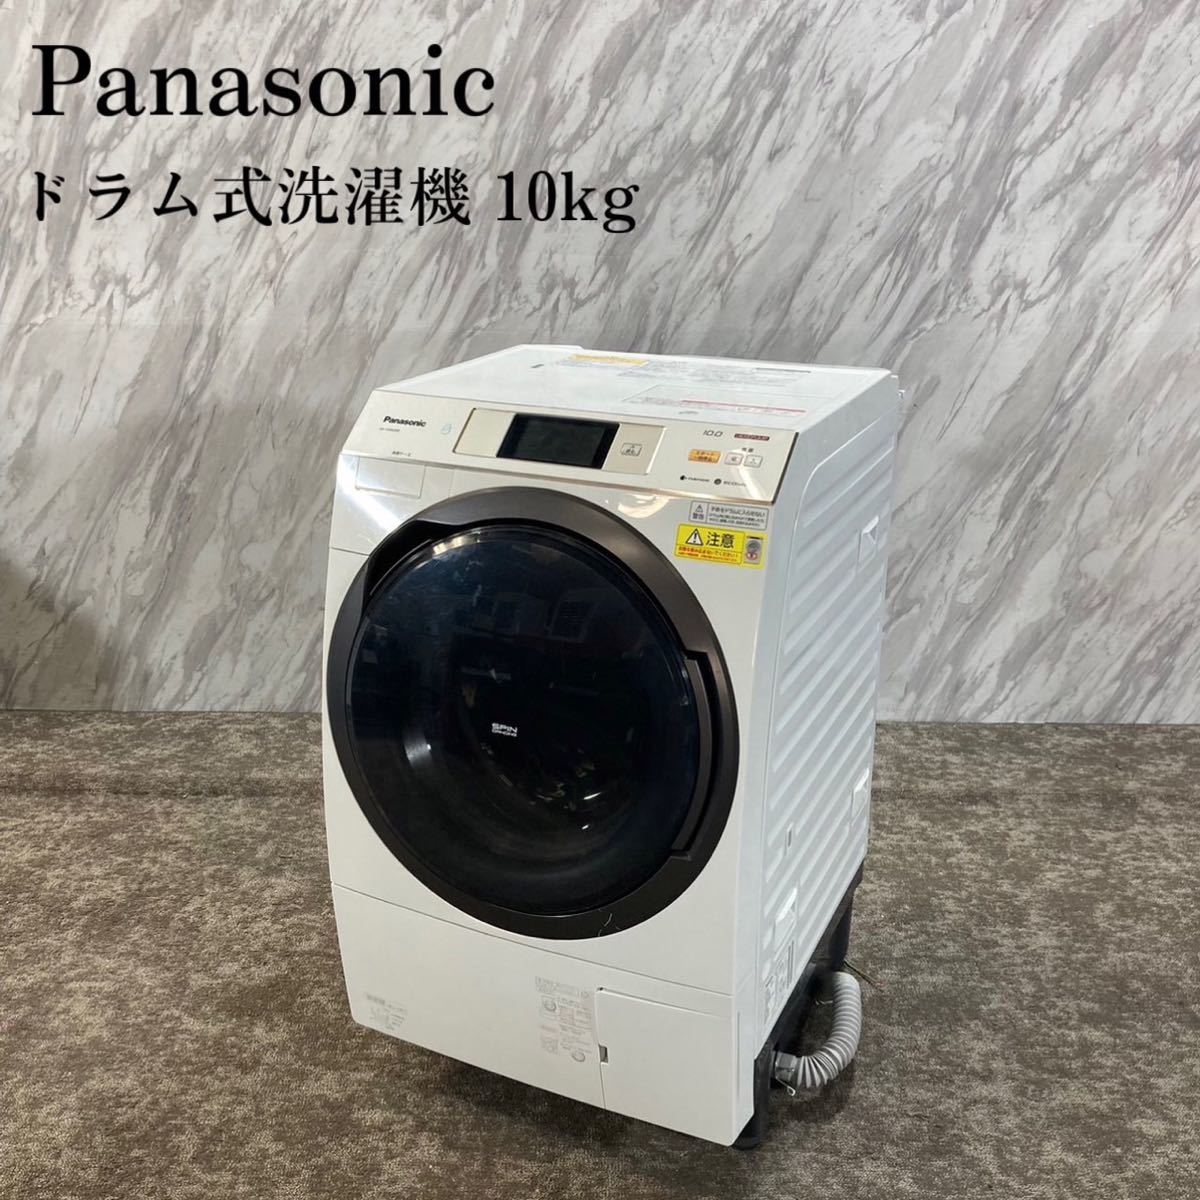 【一部予約販売中】 Panasonic ドラム式洗濯機 NA-VX9600R 10kg J494 ドラム式